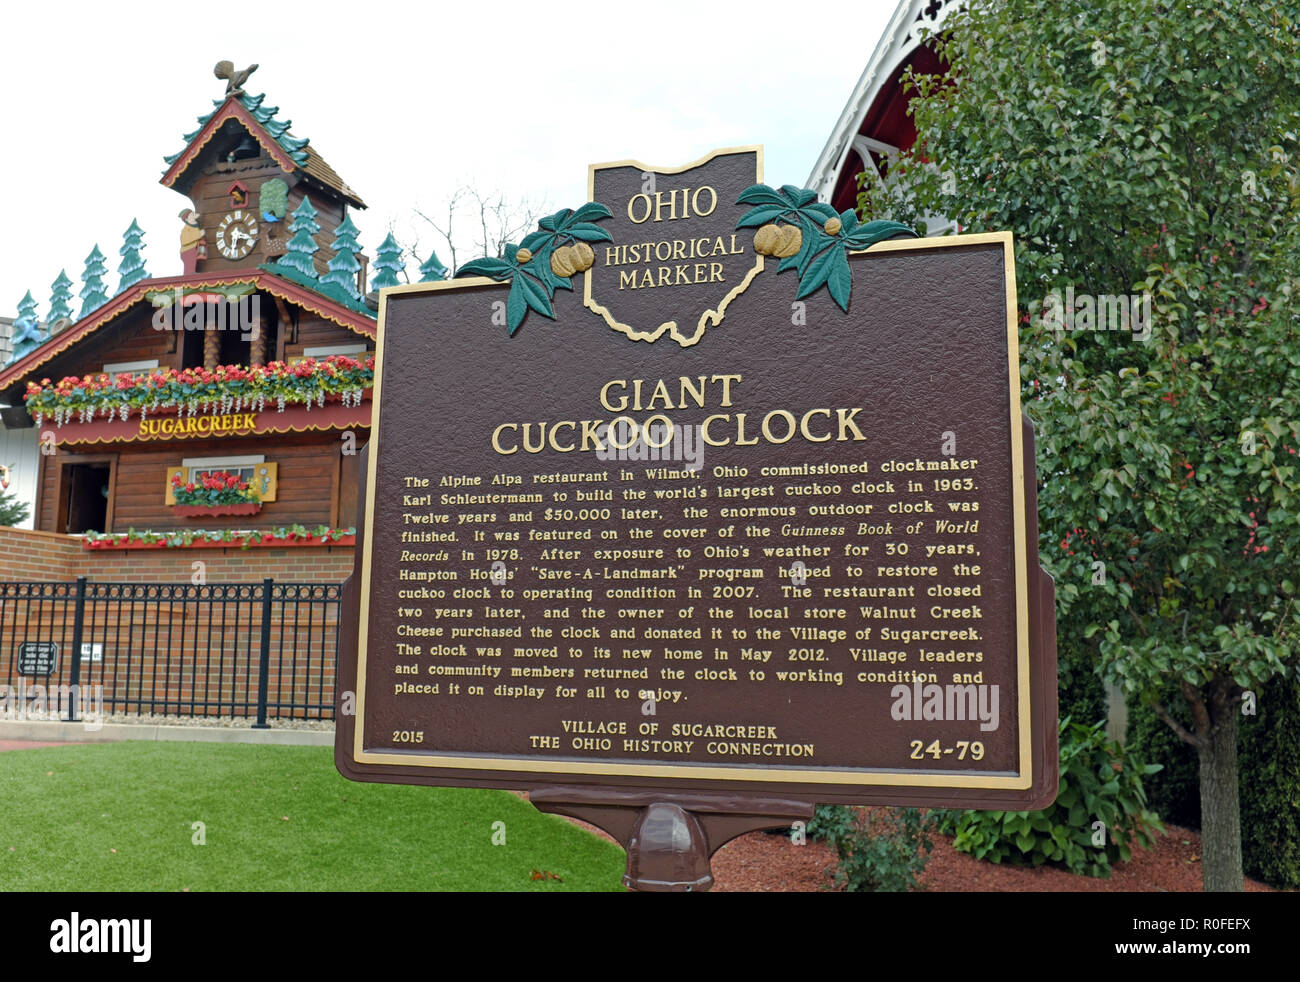 Die größte Kuckucksuhr der Welt steht in Sugarcreek, Ohio, USA, wo ein historischer Marker aus Ohio, der seine Geschichte erklärt, steht. Stockfoto